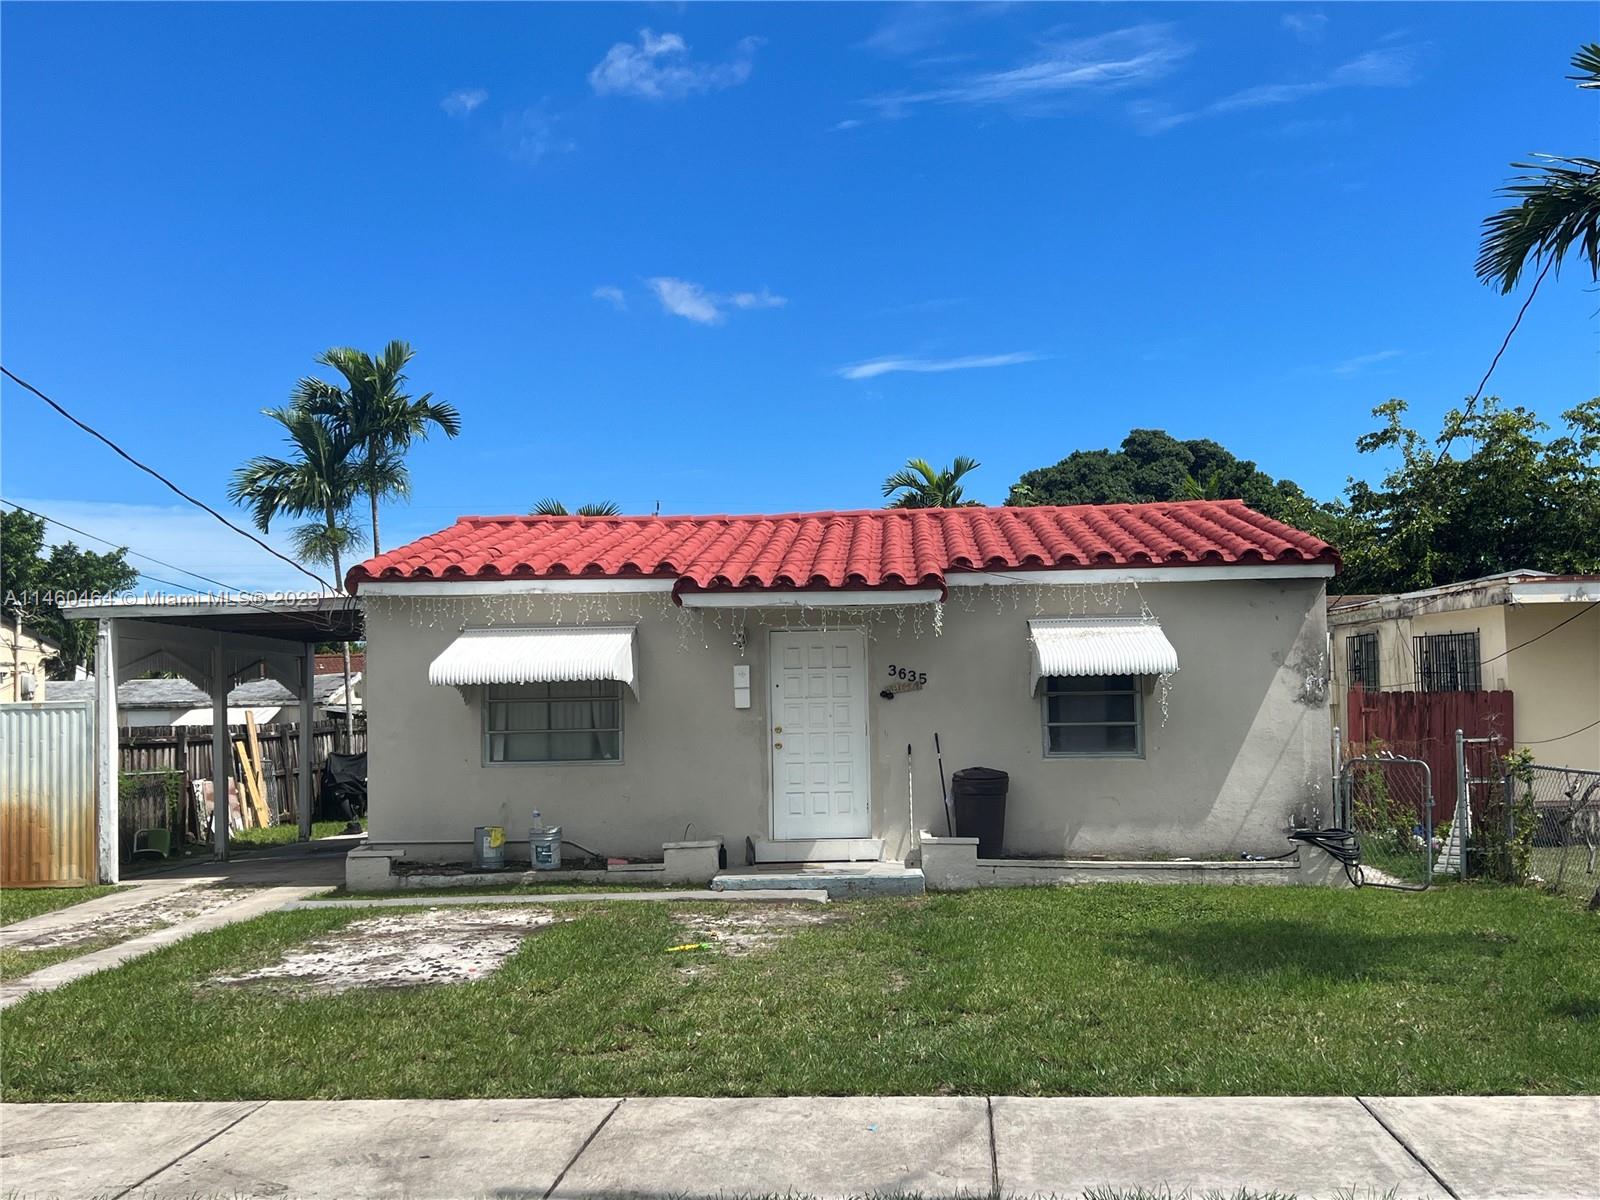 View Miami, FL 33165 house